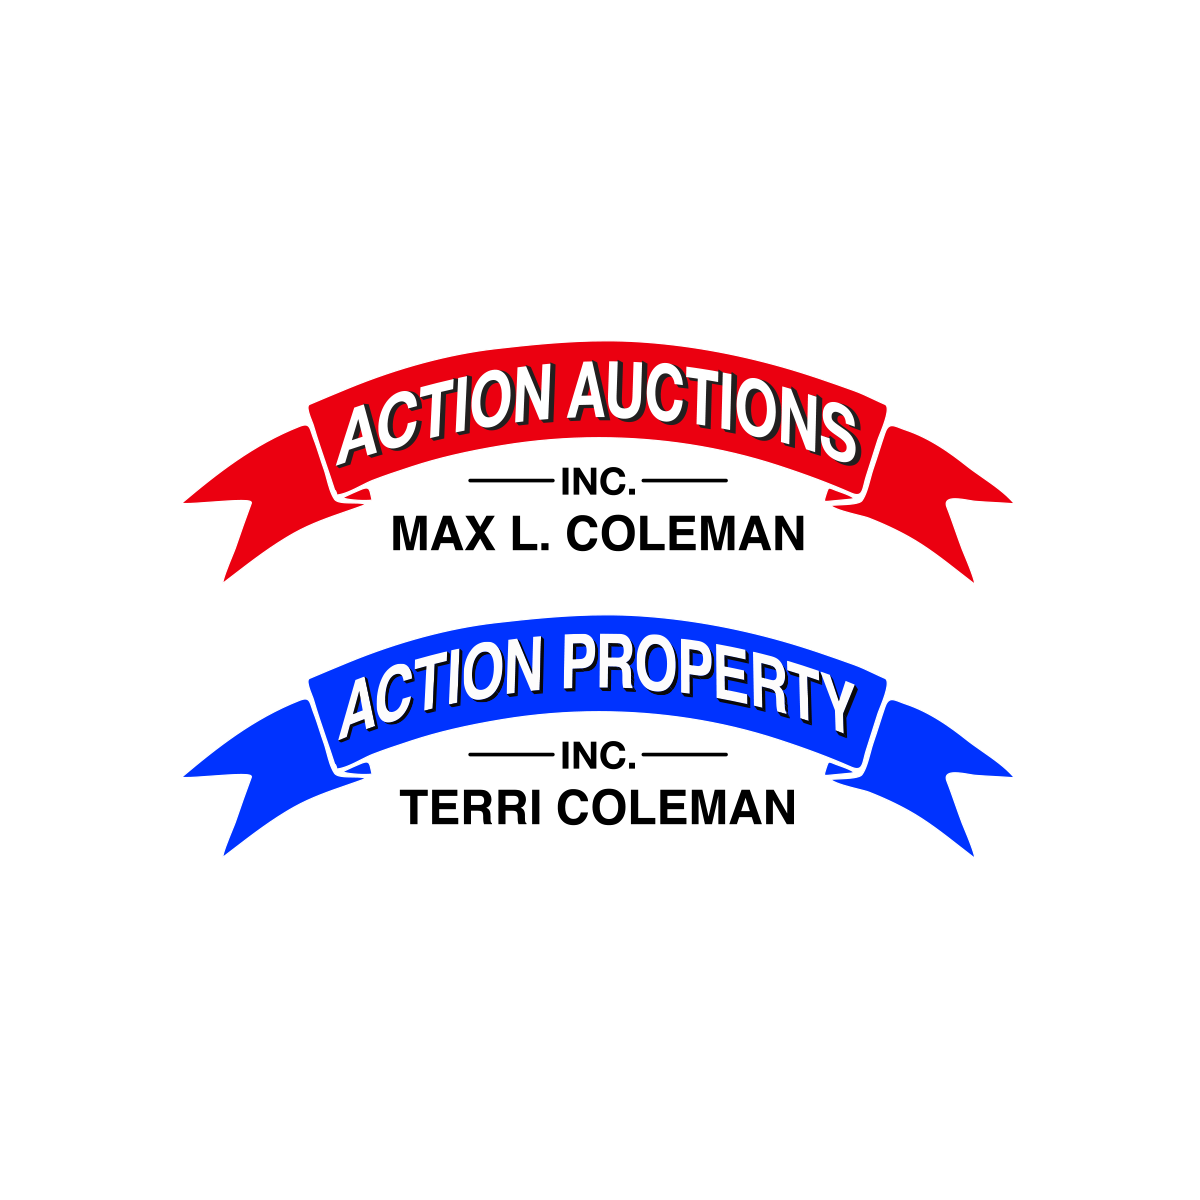 (c) Action-auctions.com